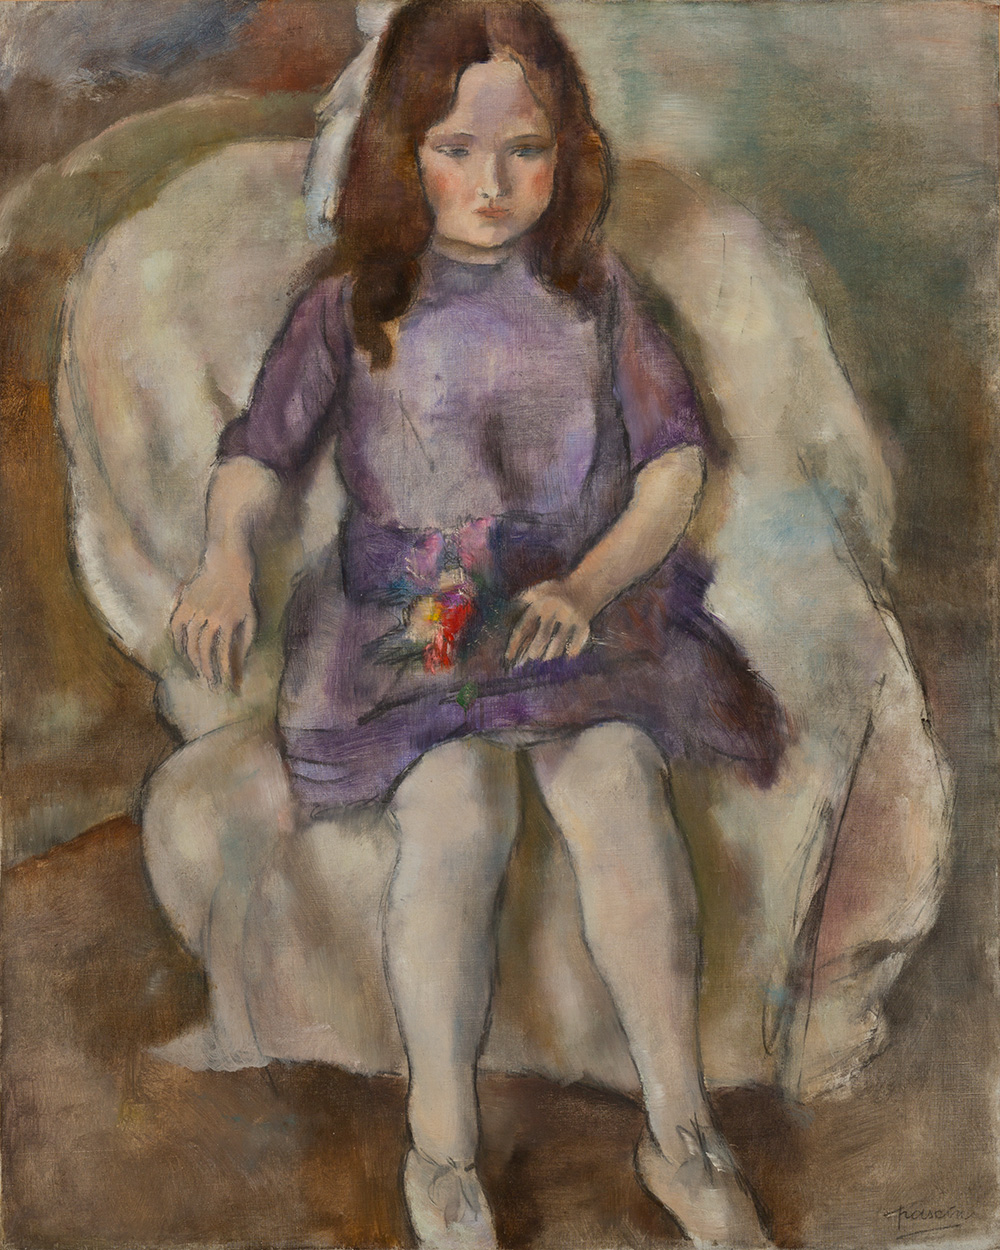 朱爾．帕斯金(Jules Pascin)  《手拿花束的少女》<br>1925年-1926年 油彩・畫布<br>80.0×64.0cm